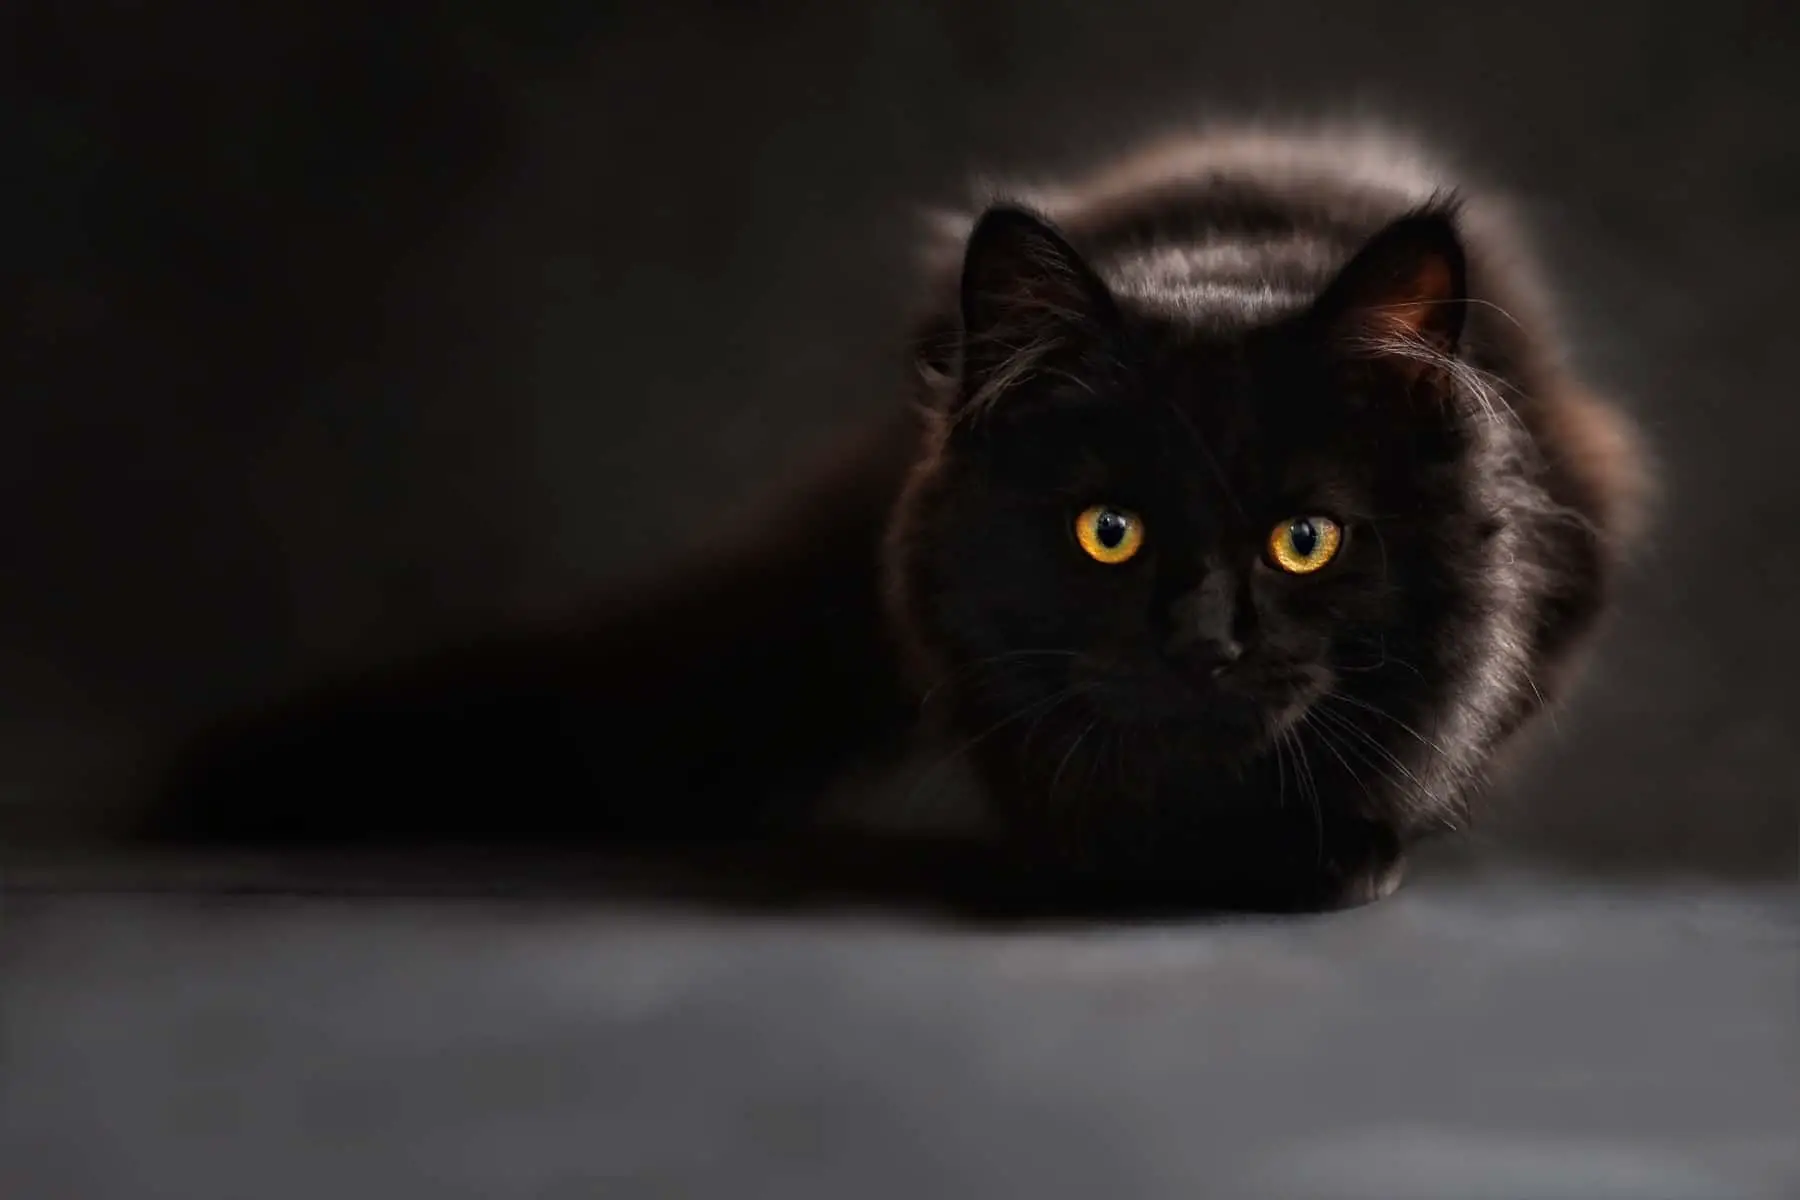 Black Cat Facts